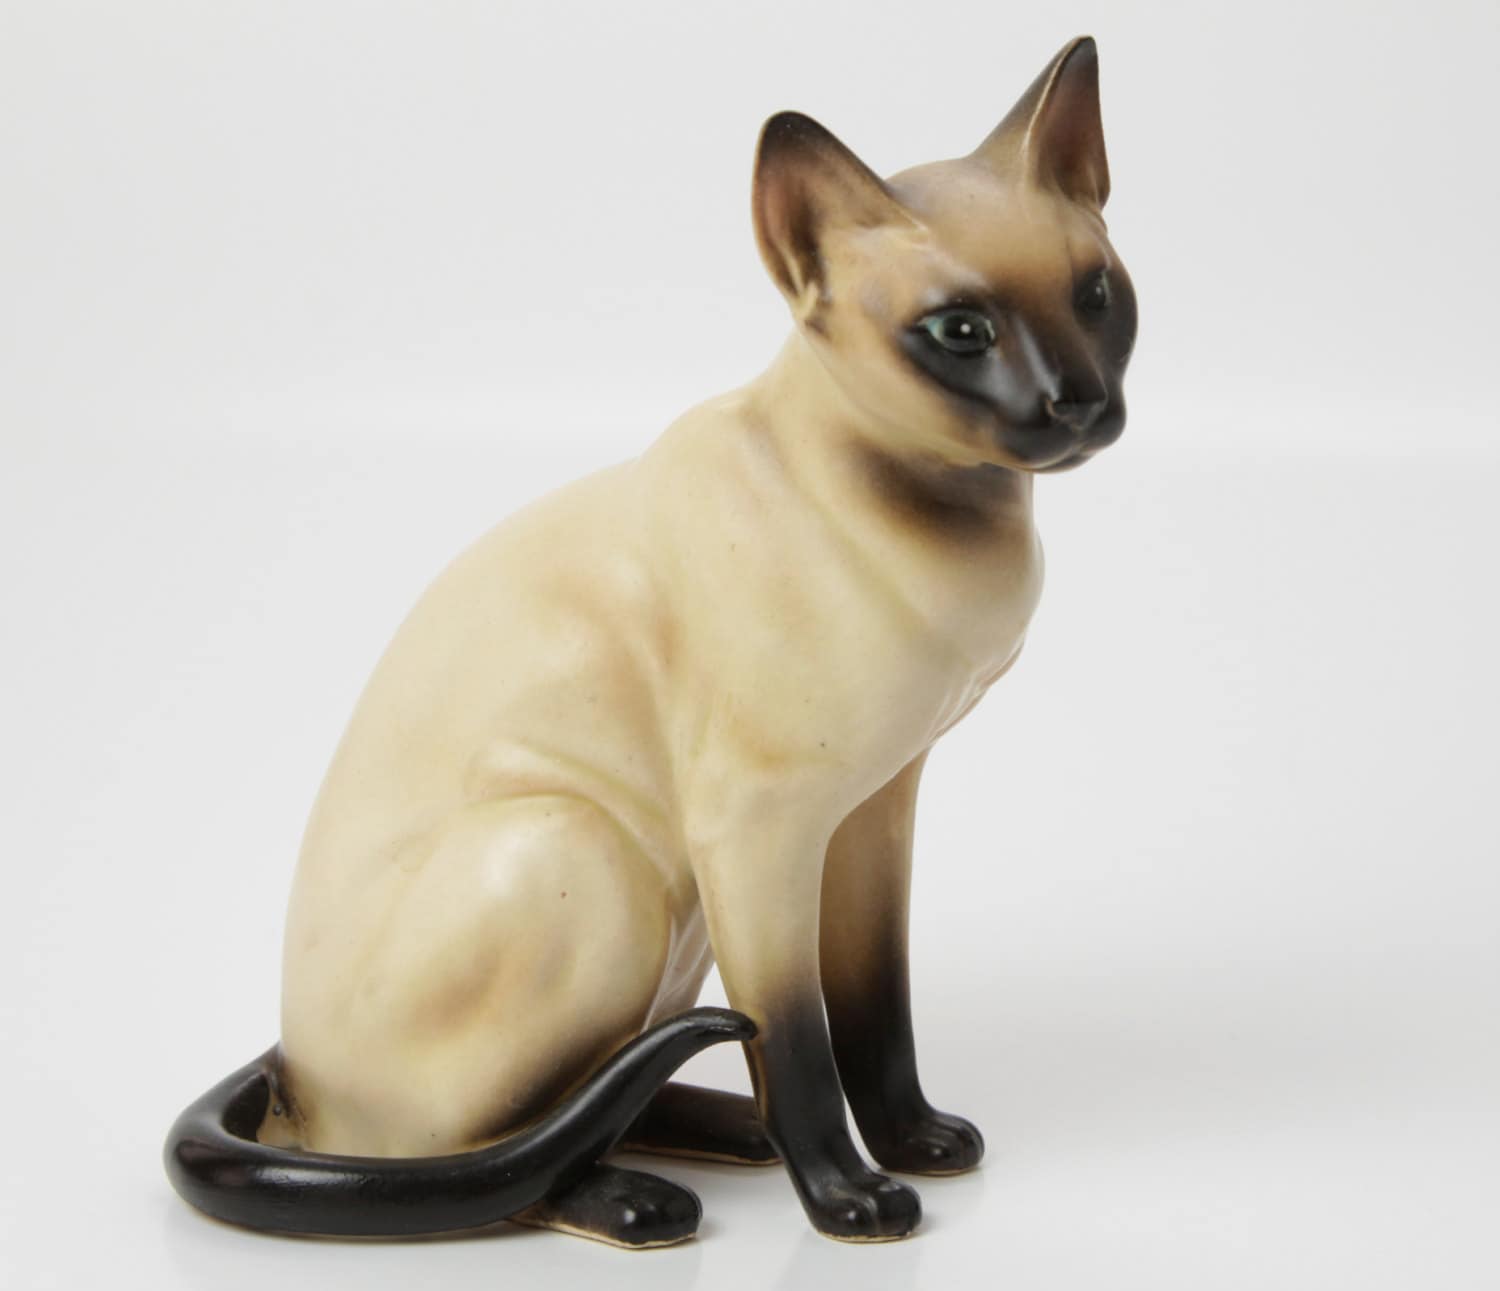  Ceramic  Siamese  Cat  Figurine H4039 by Lefton 1960 s